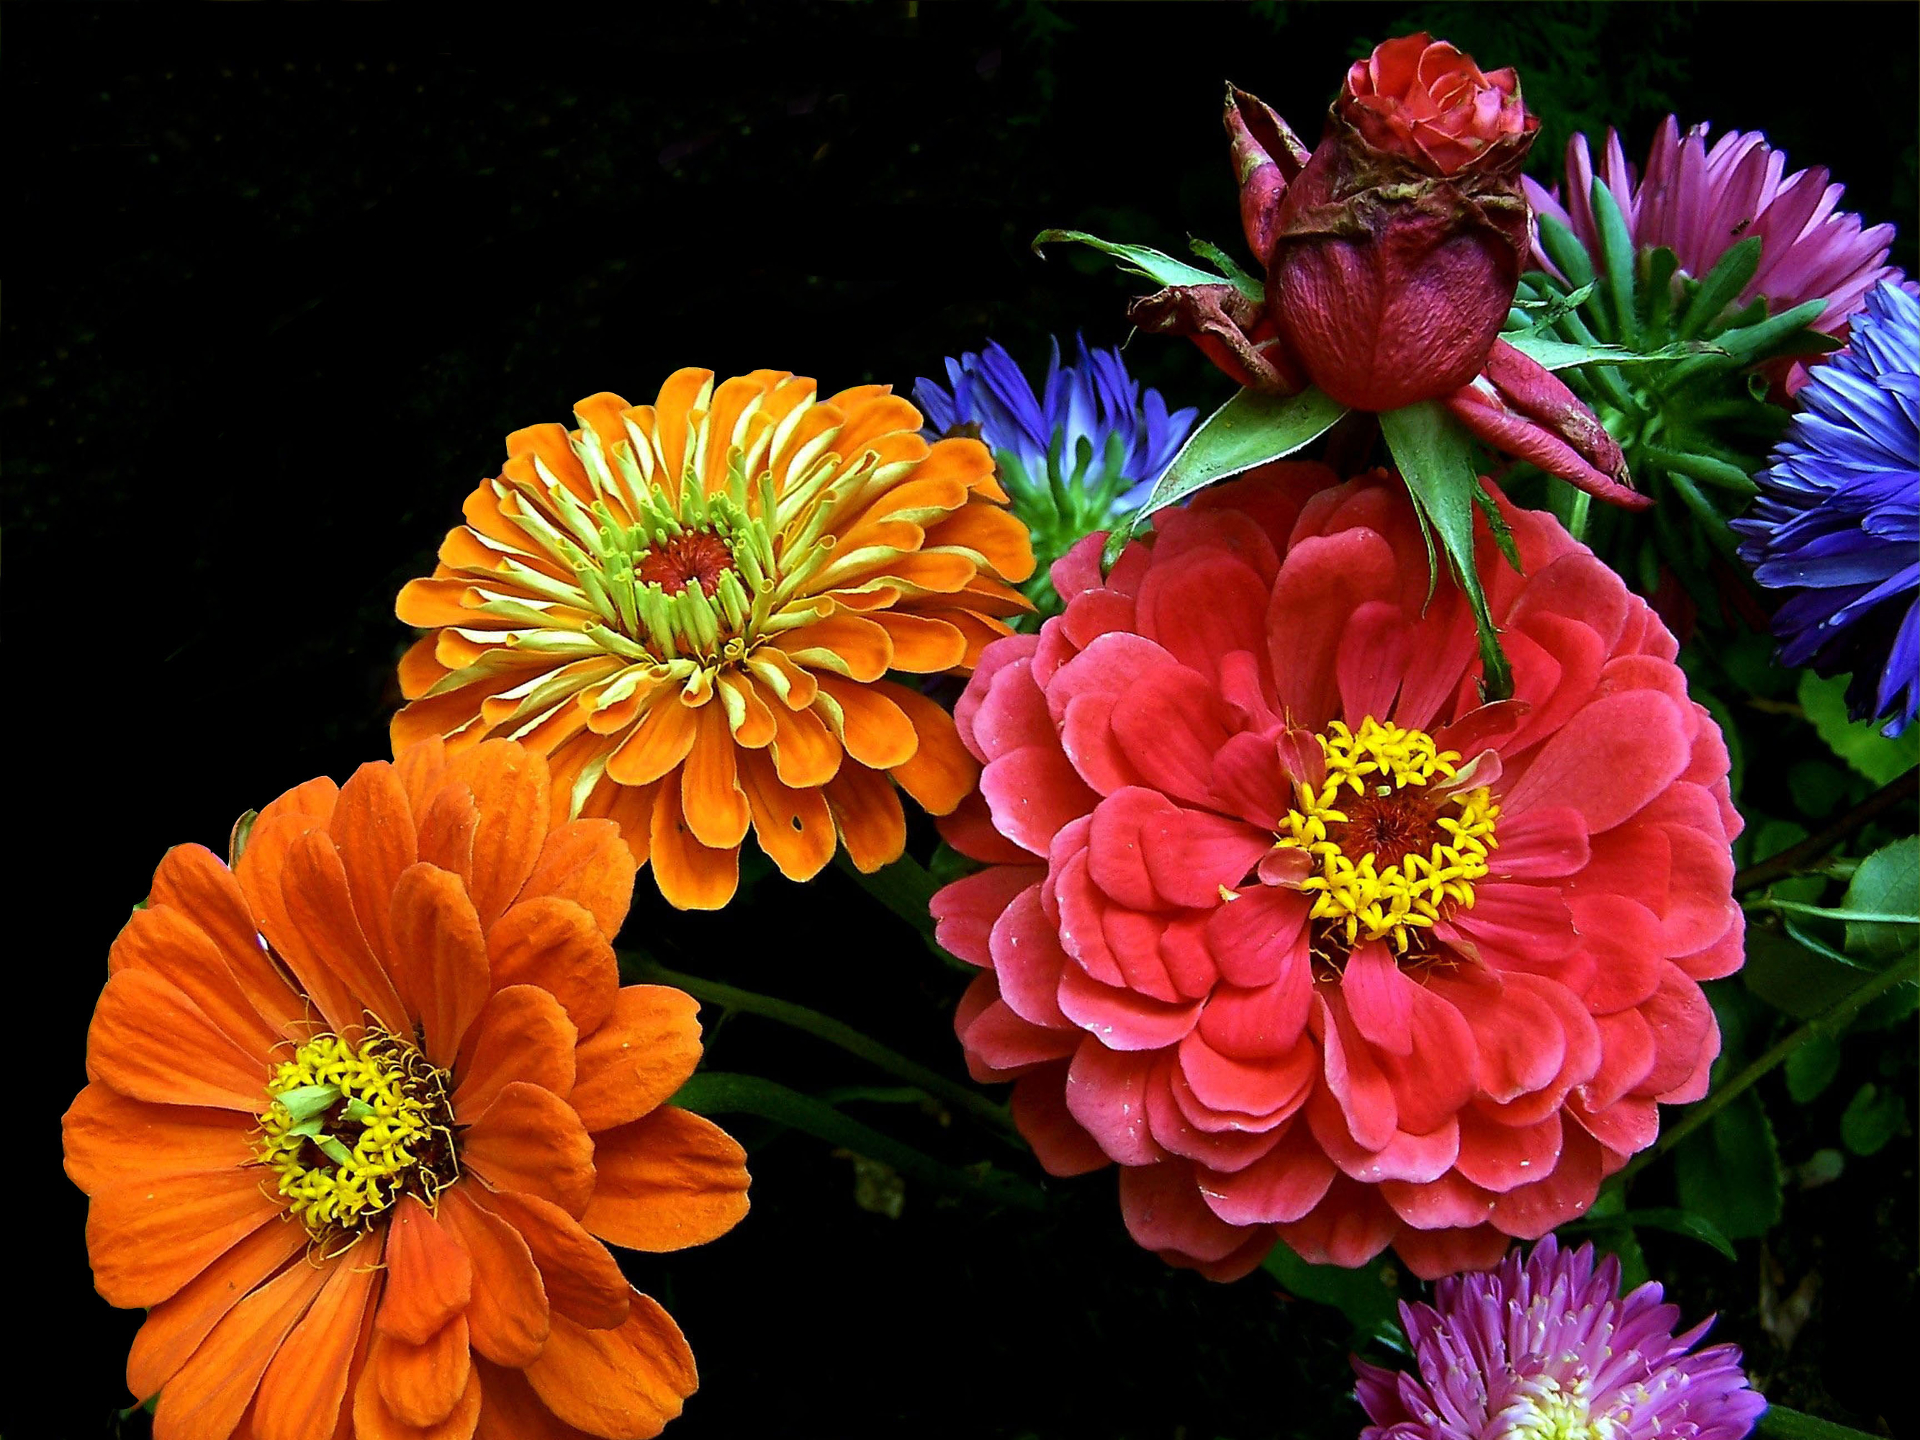 Скачать обои бесплатно Цветок, Яркий, Цвета, Красочный, Земля/природа, Флауэрсы картинка на рабочий стол ПК